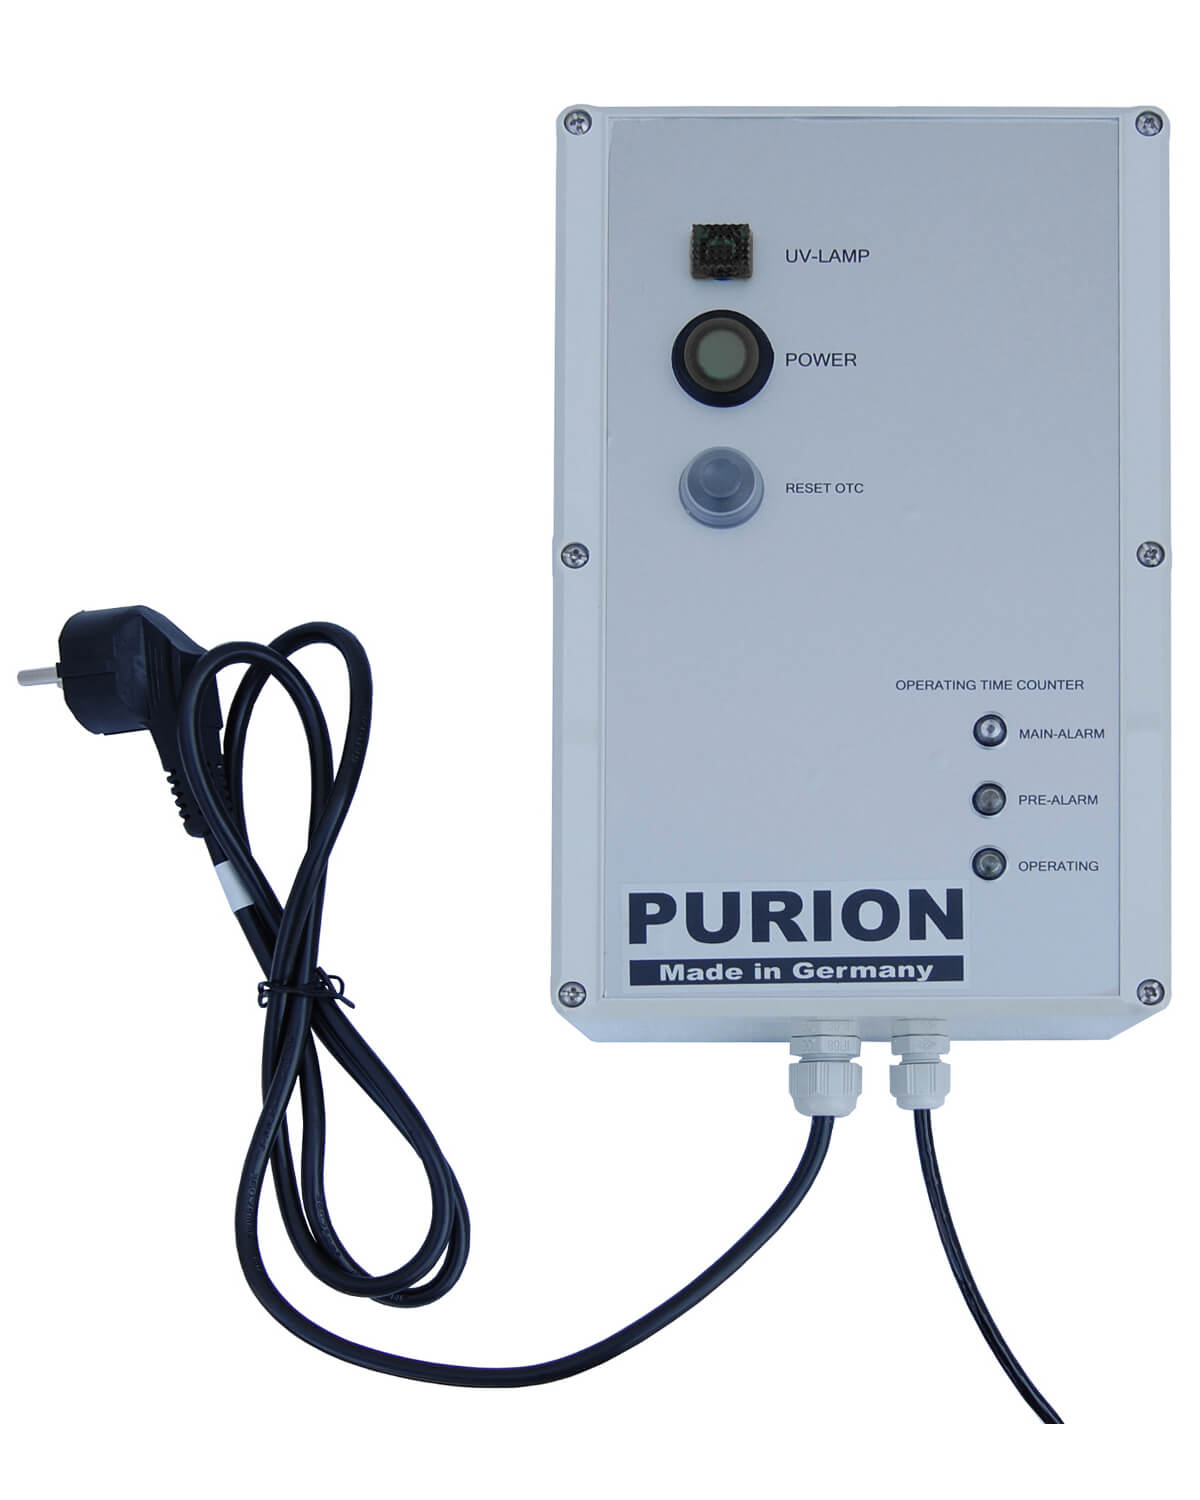 Das PURION 1000 OTC Bundle der PURION GmbH ist ein unverzichtbares Hilfsmittel zur Selbstversorgung mit Trinkwasser und zur Gewährleistung einer effizienten Wasserdesinfektion.